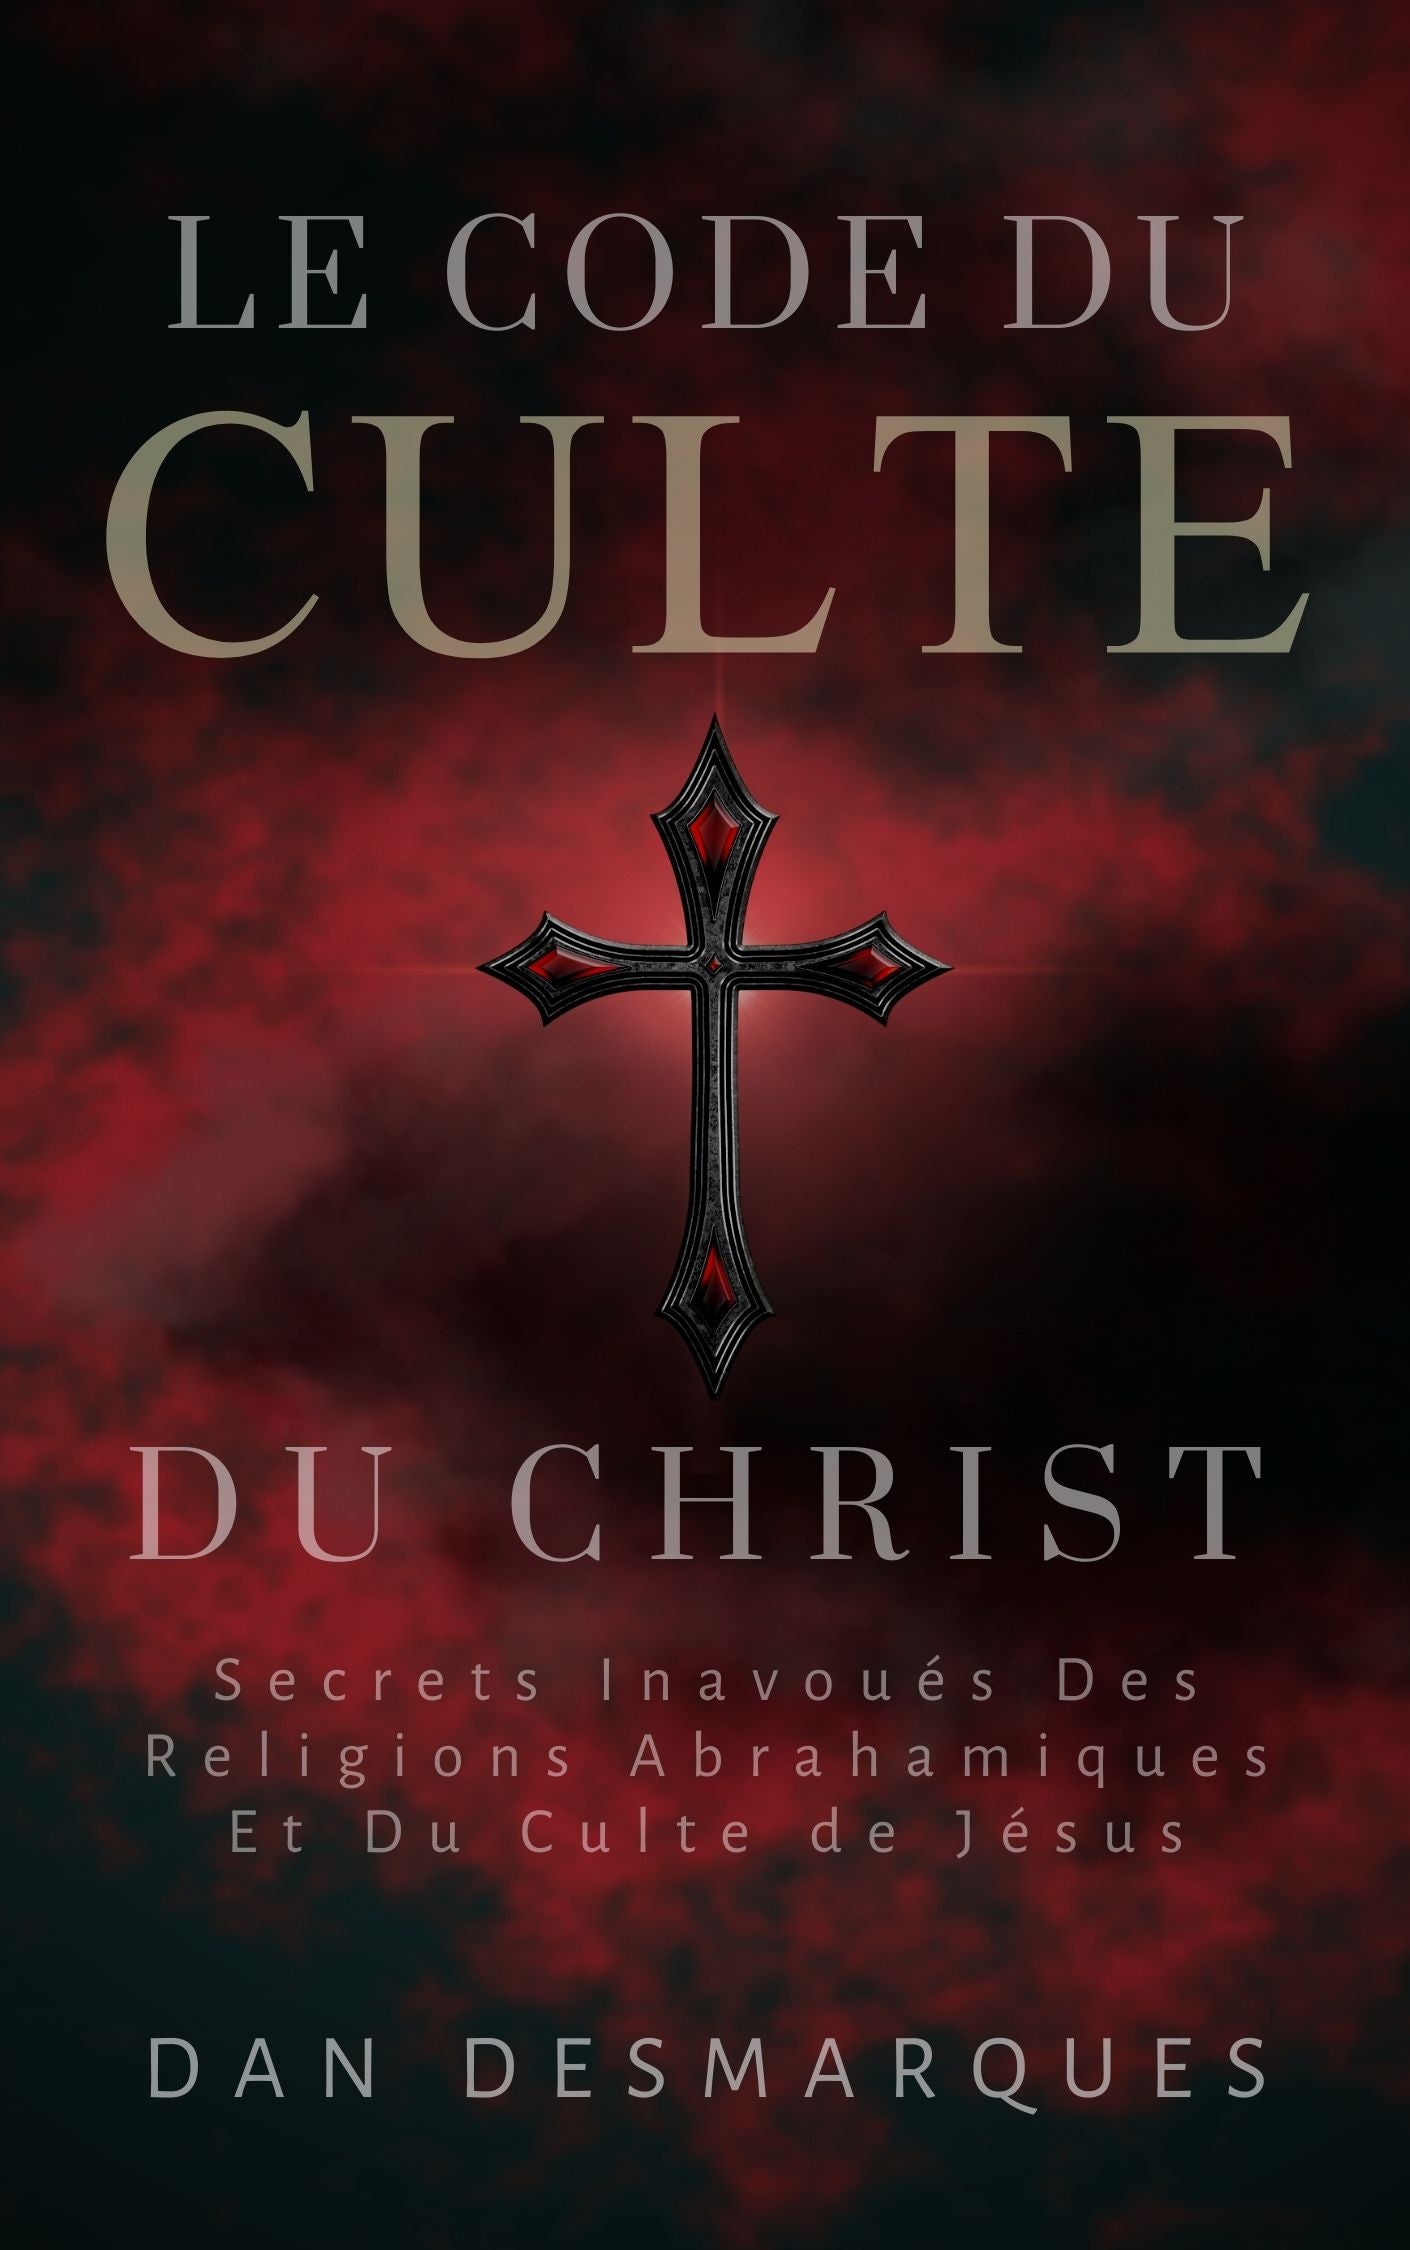 Christ Cult Codex French EPUB